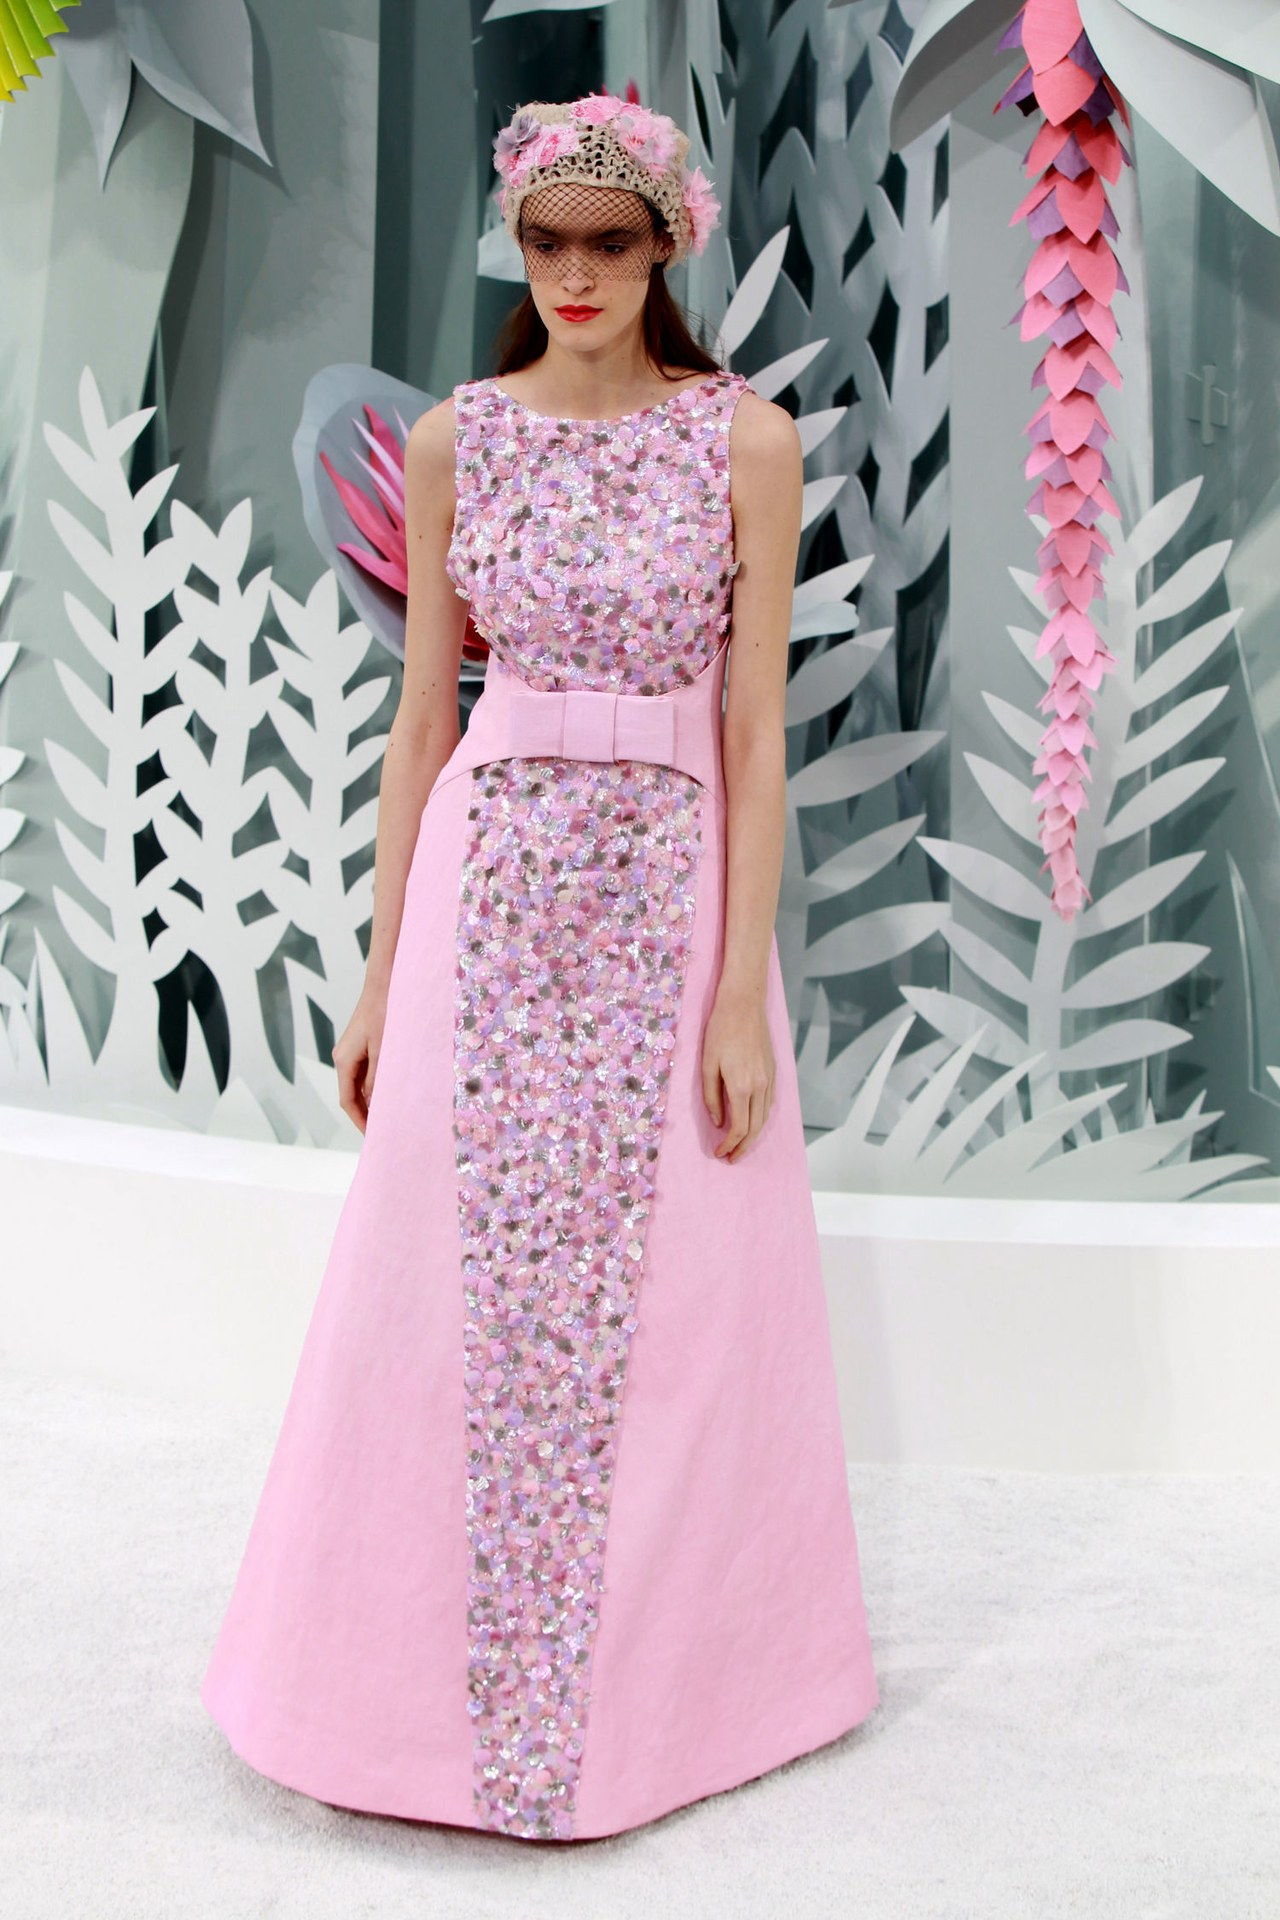 شانيل couture pink sequin dress spring 2015 runway